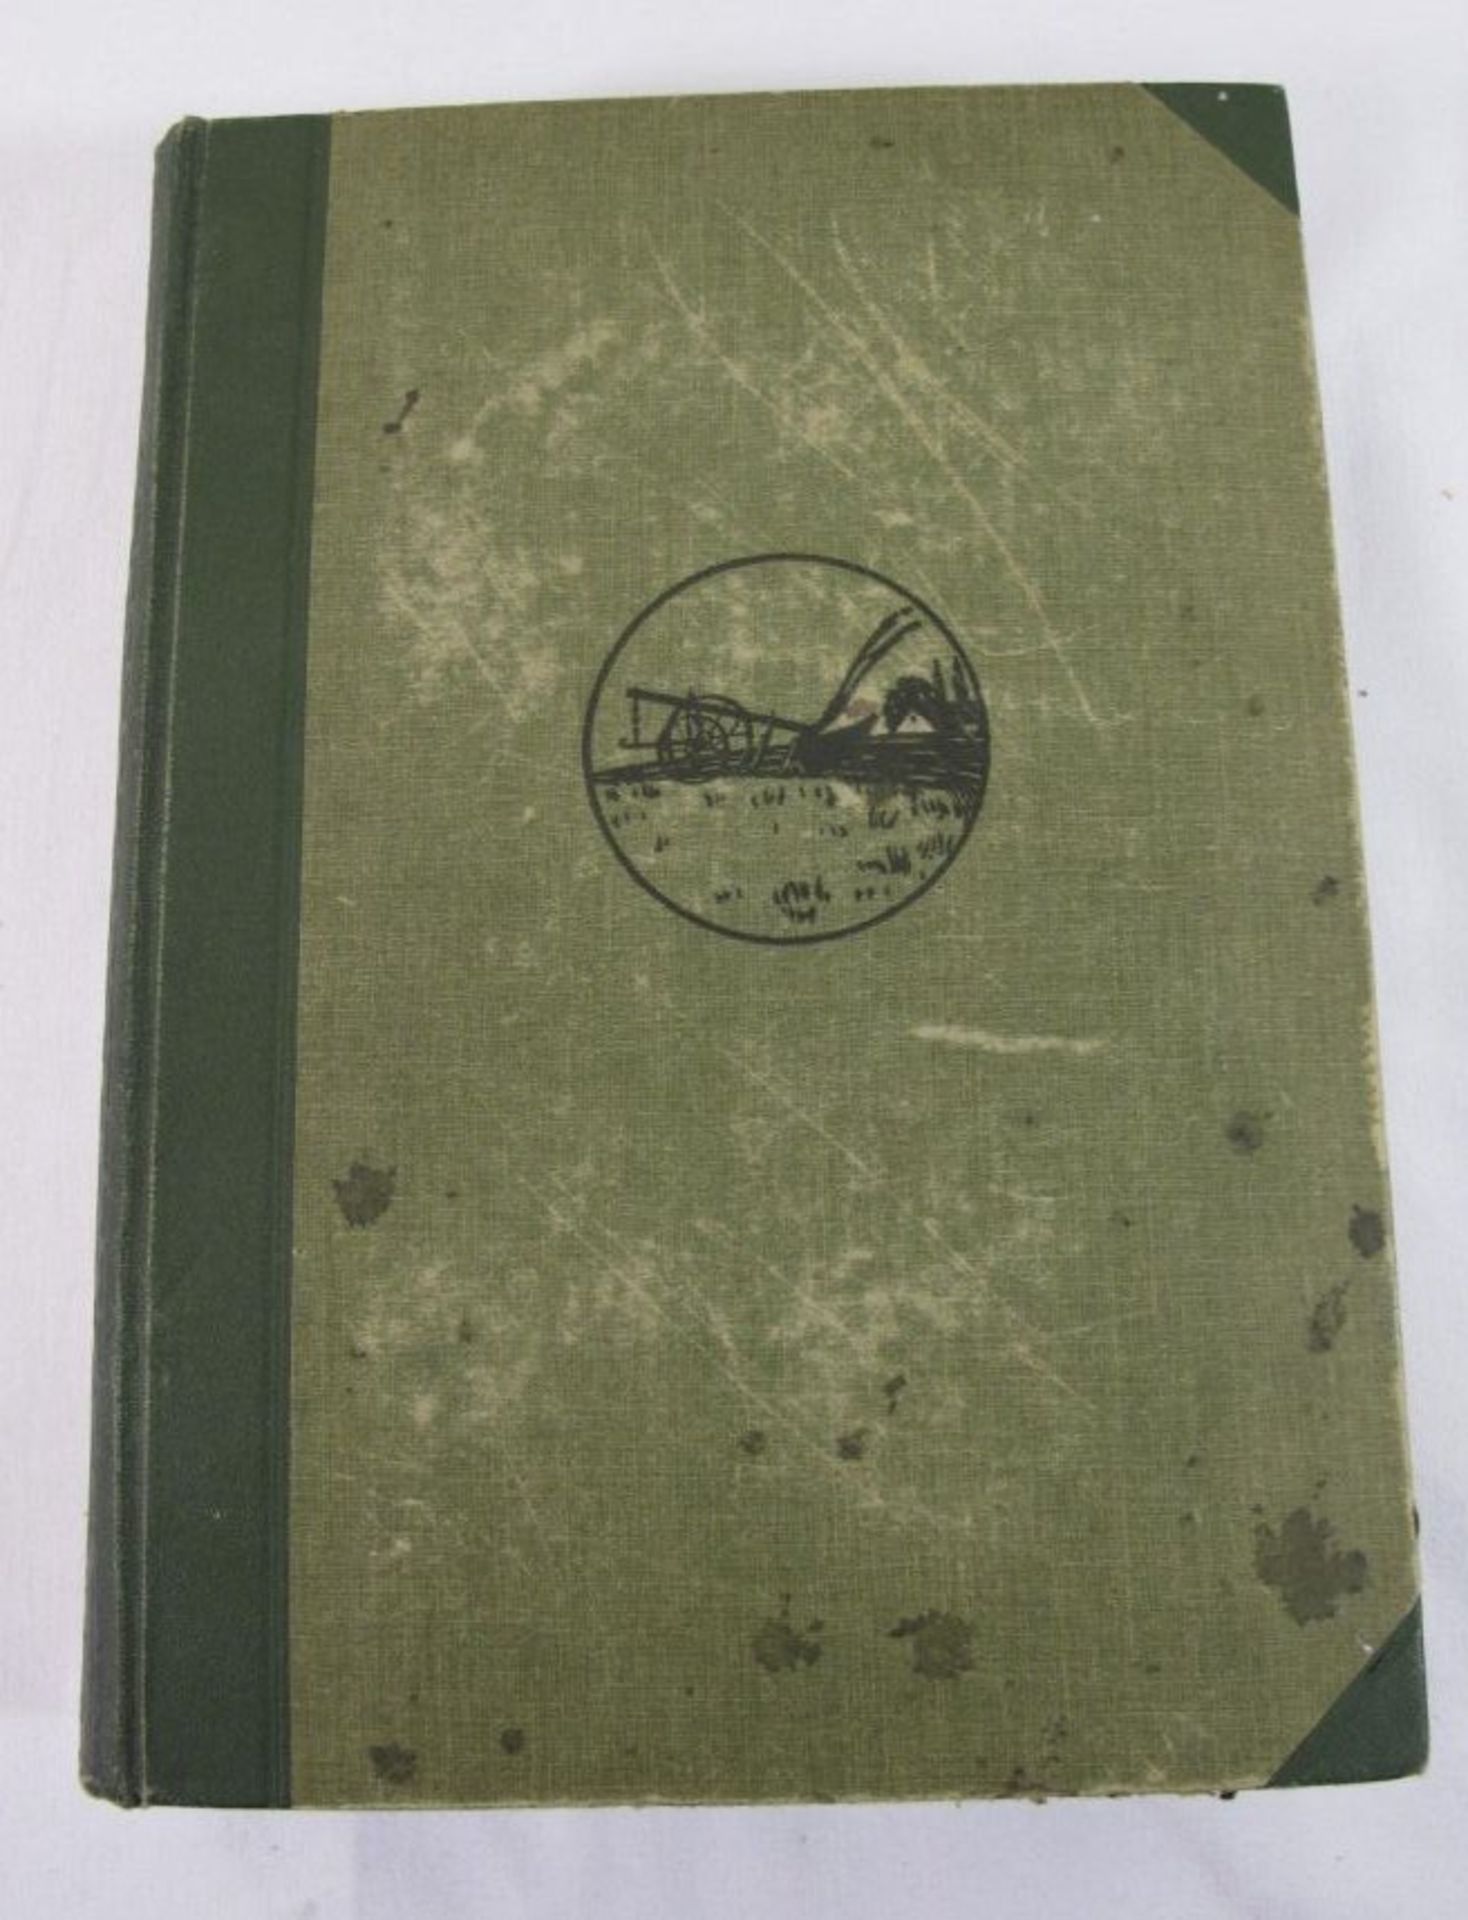 4 Bände "Landlexikon", von 1911, Band 2-5, Alters-u. Gebrauchsspure